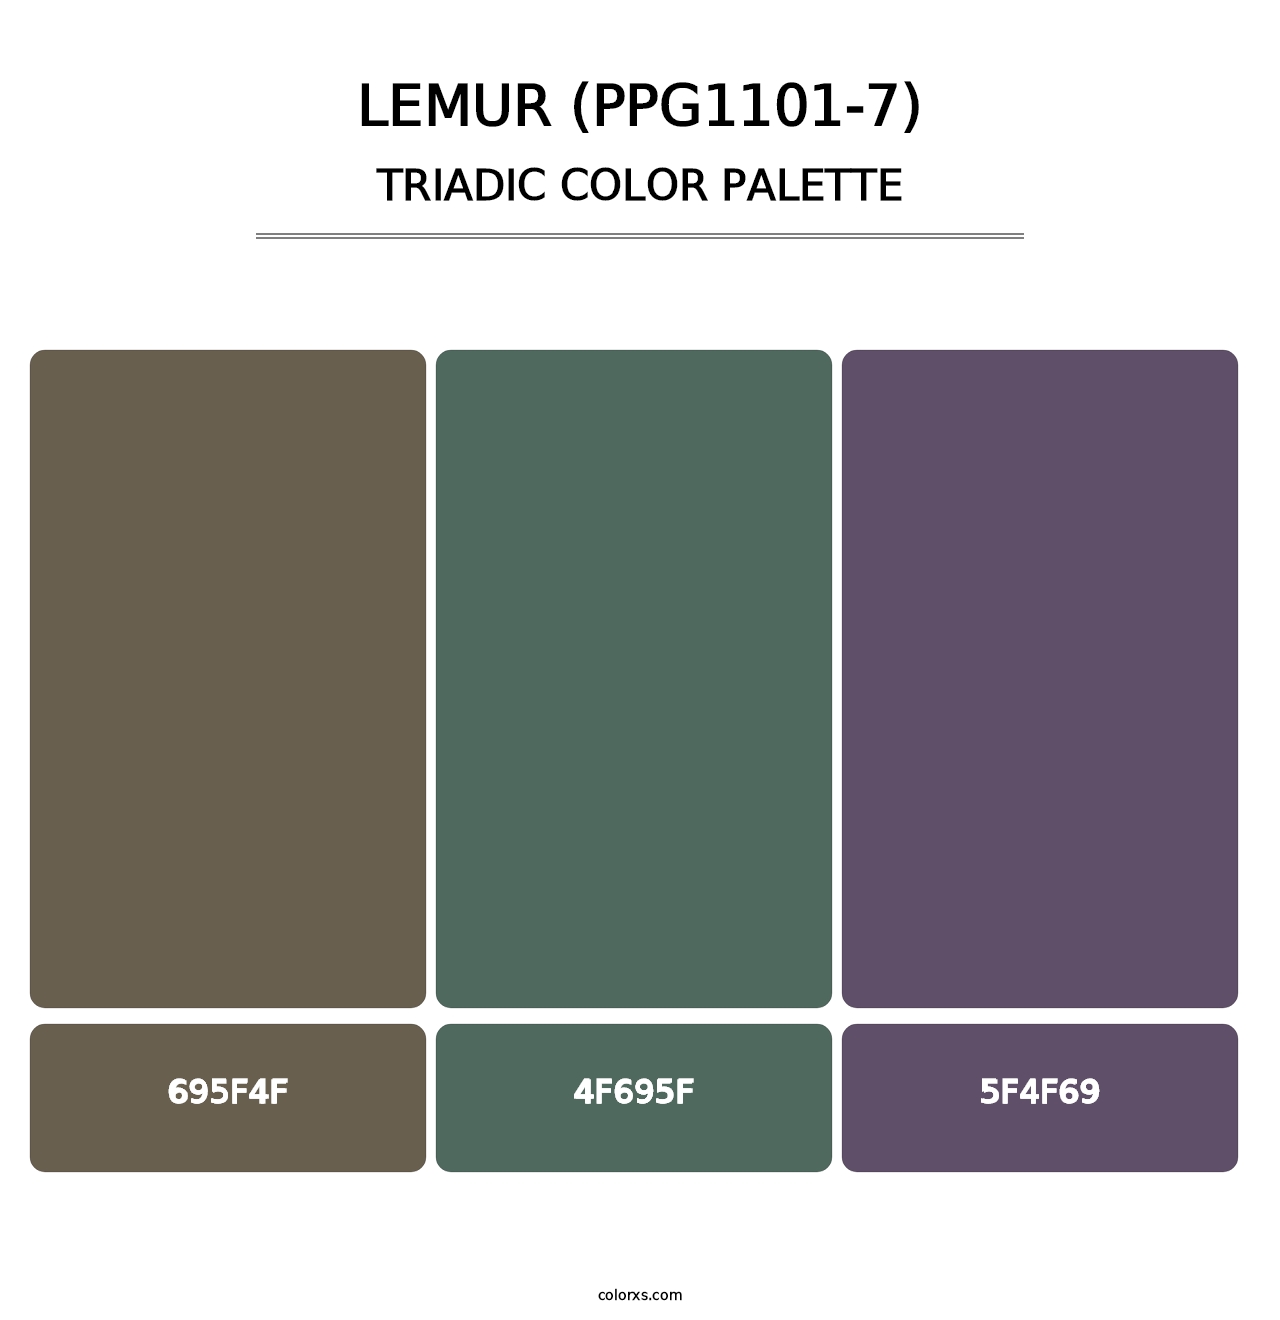 Lemur (PPG1101-7) - Triadic Color Palette